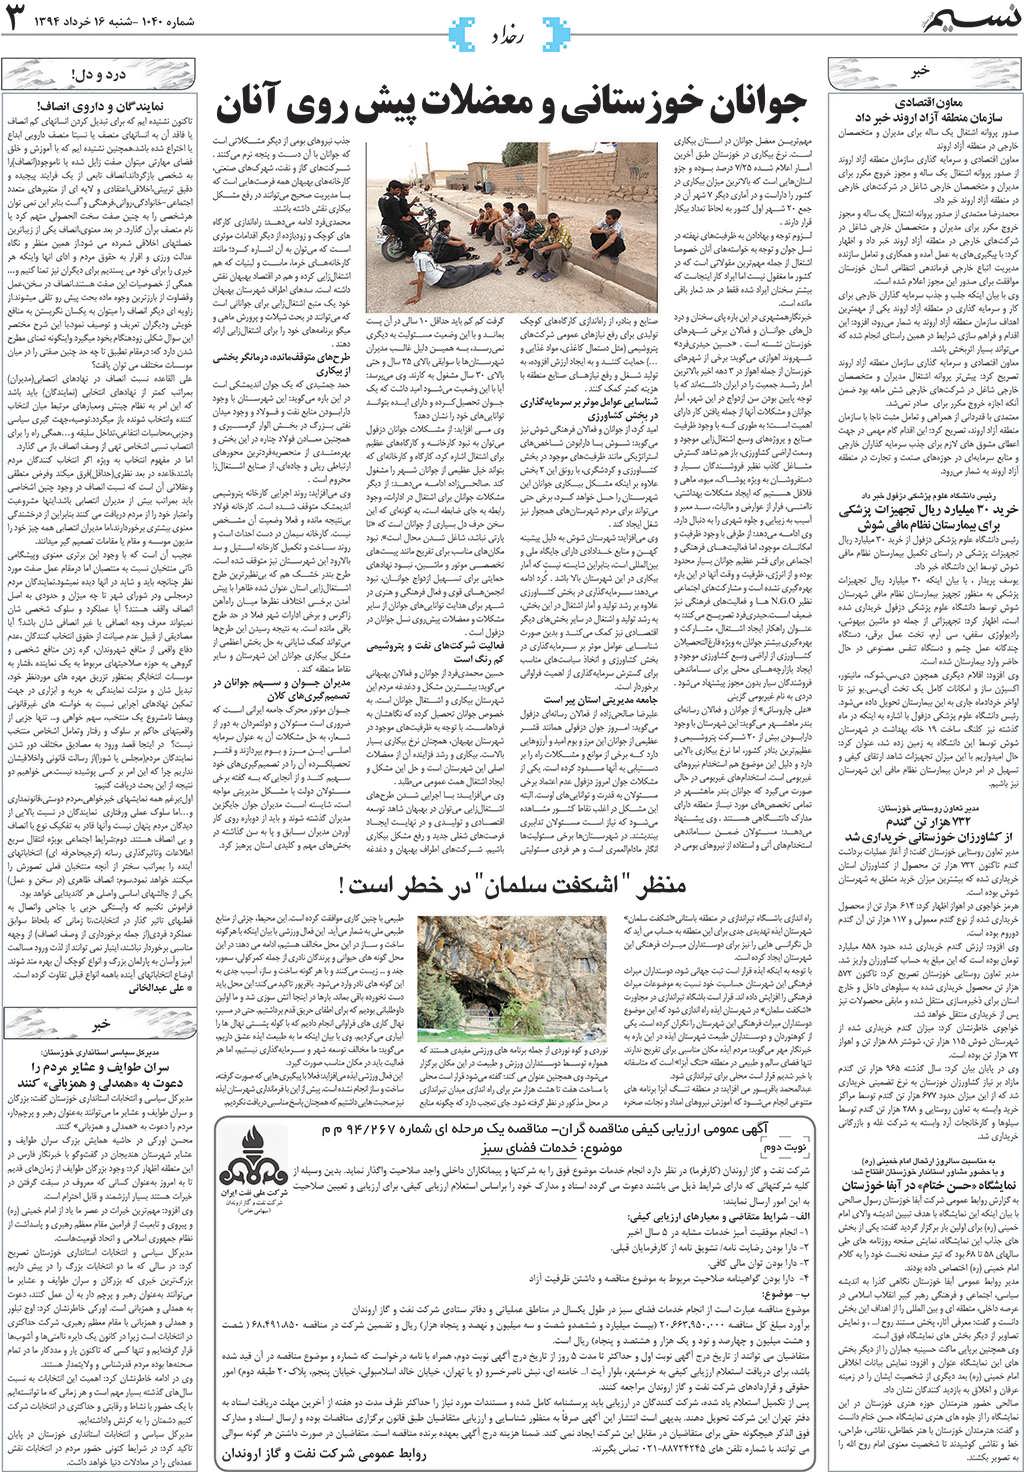 صفحه رخداد روزنامه نسیم شماره 1040